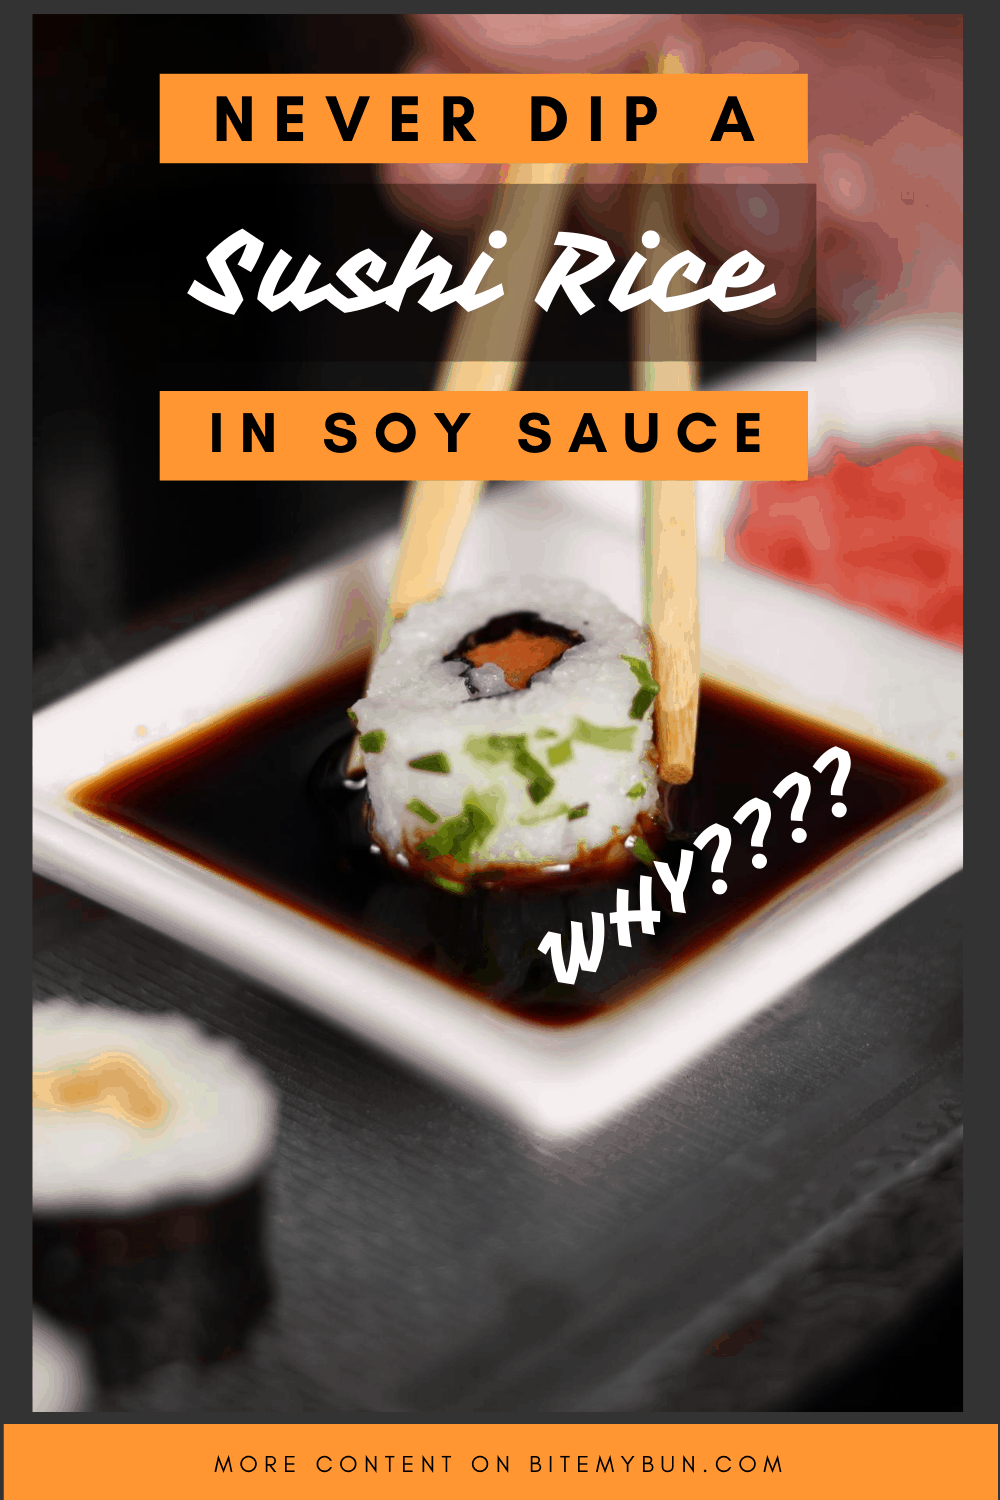 Arroz de sushi em molho de soja